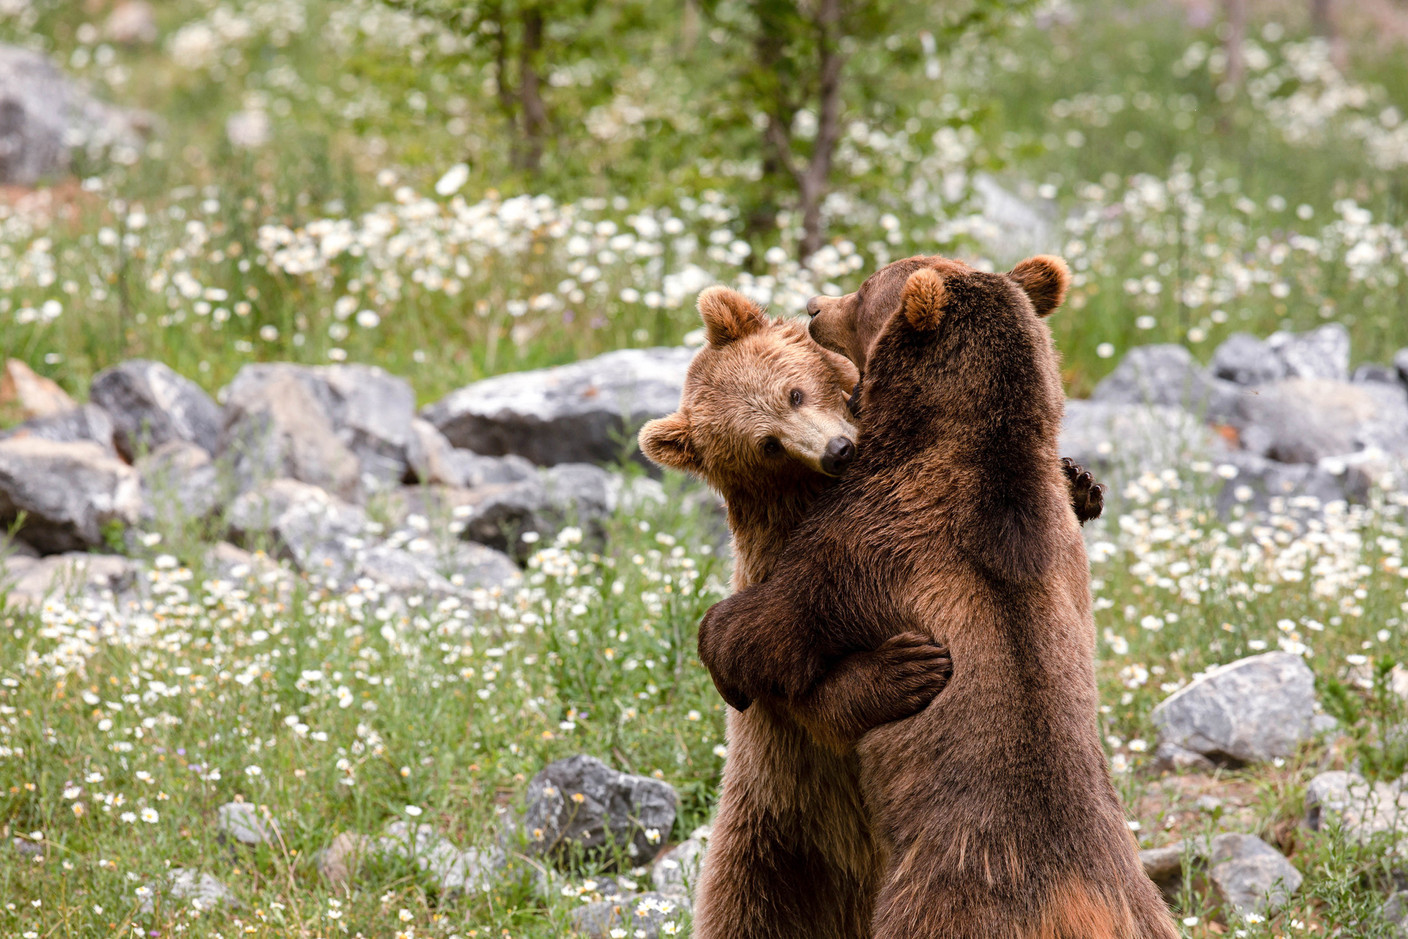  Au début du mois d’avril, les ours bruns et les marmottes sont sortis de leur sommeil hivernal et animent le parc de leur présence et de leurs jeux.  (Photo: Domaine des grottes de Han)